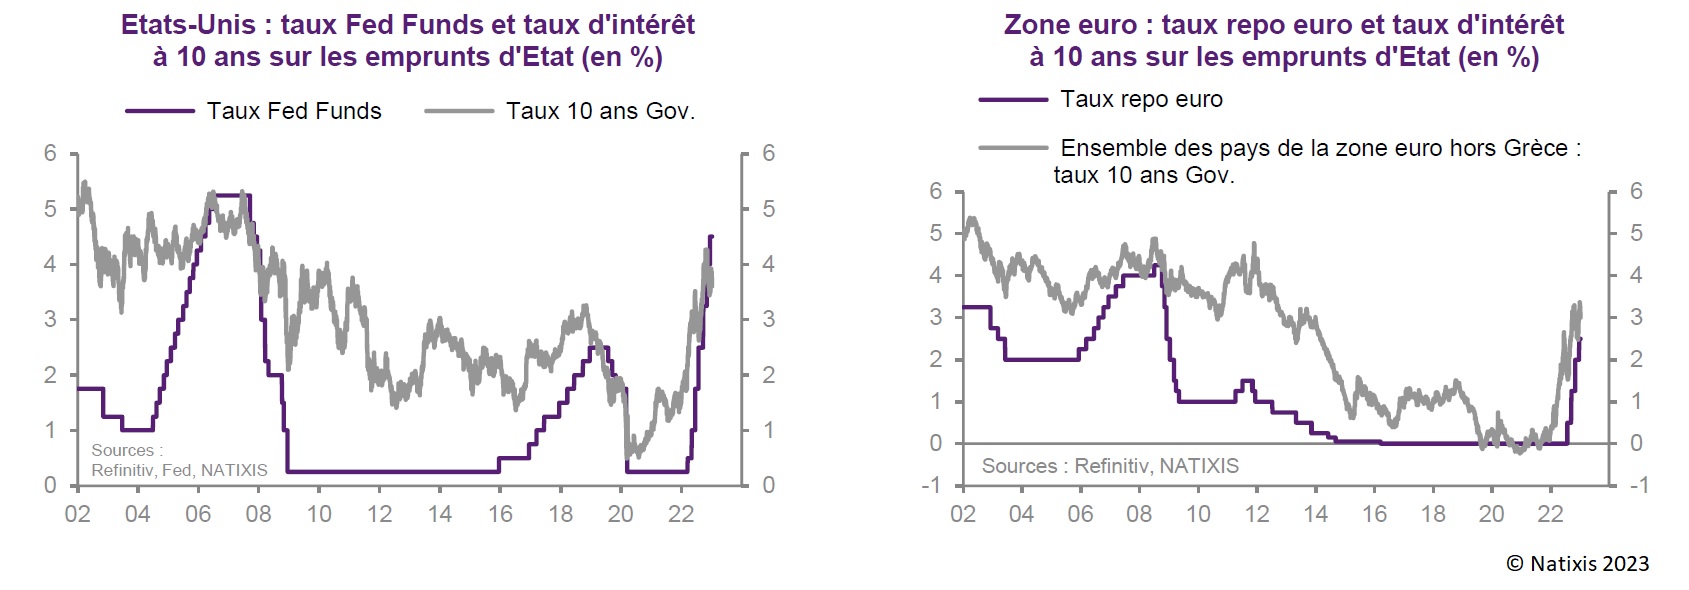 Graphiques : taux d'intérêt à 10 ans sur les emprunts d'Etat aux Etats-Unis et dans la zone euro (en %)